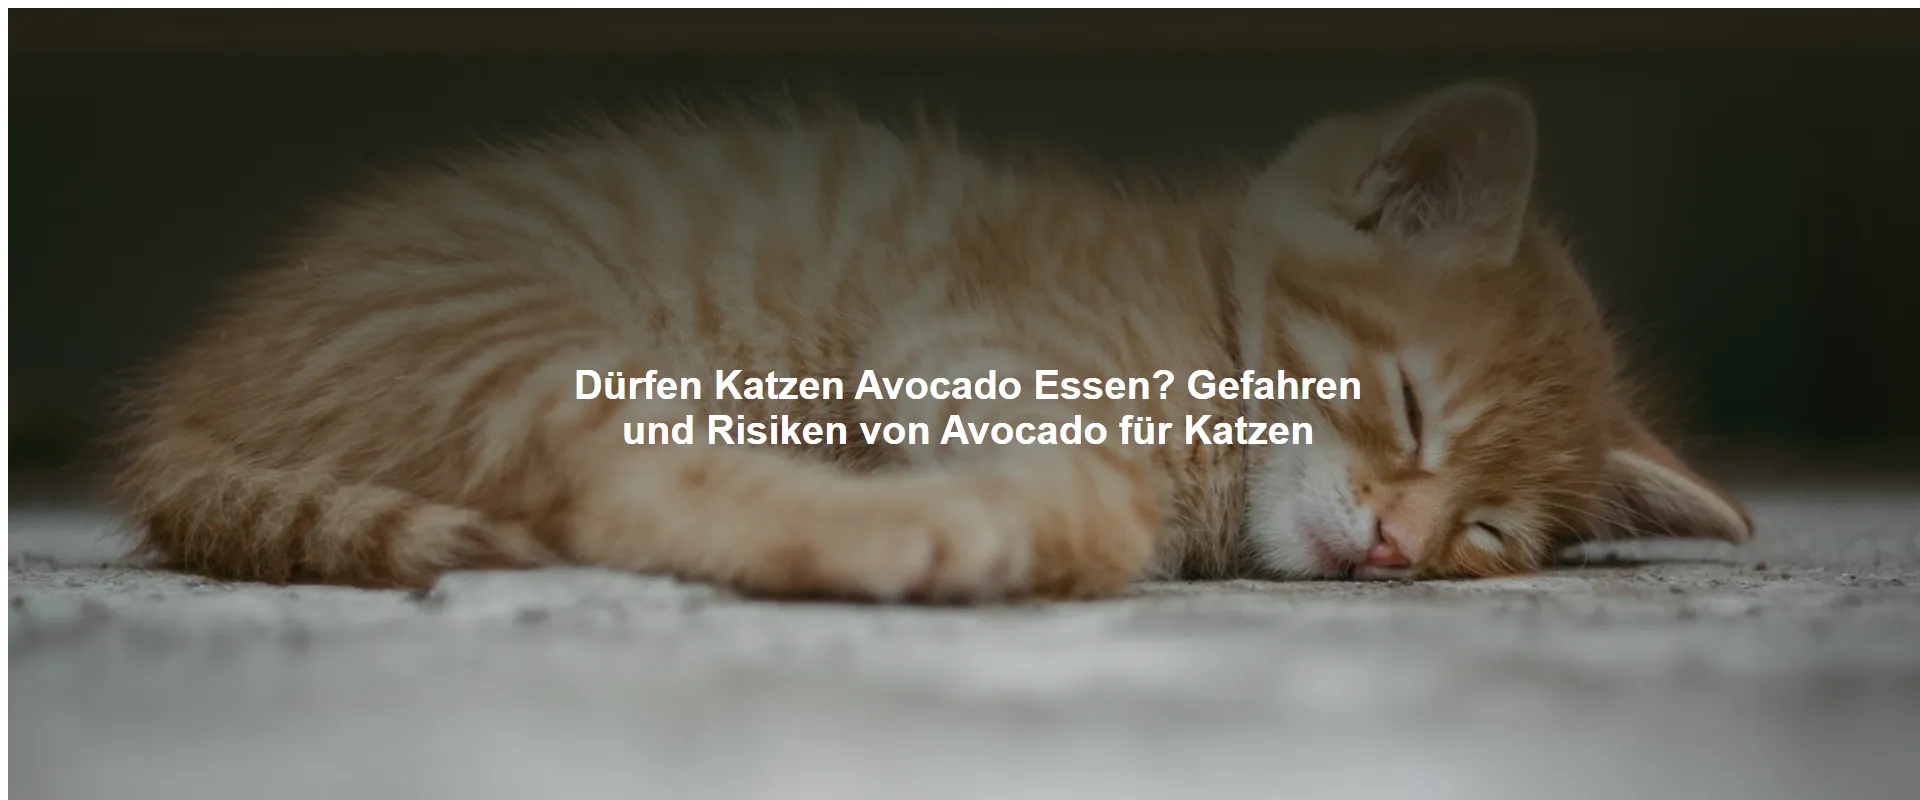 Dürfen Katzen Avocado Essen? Gefahren und Risiken von Avocado für Katzen